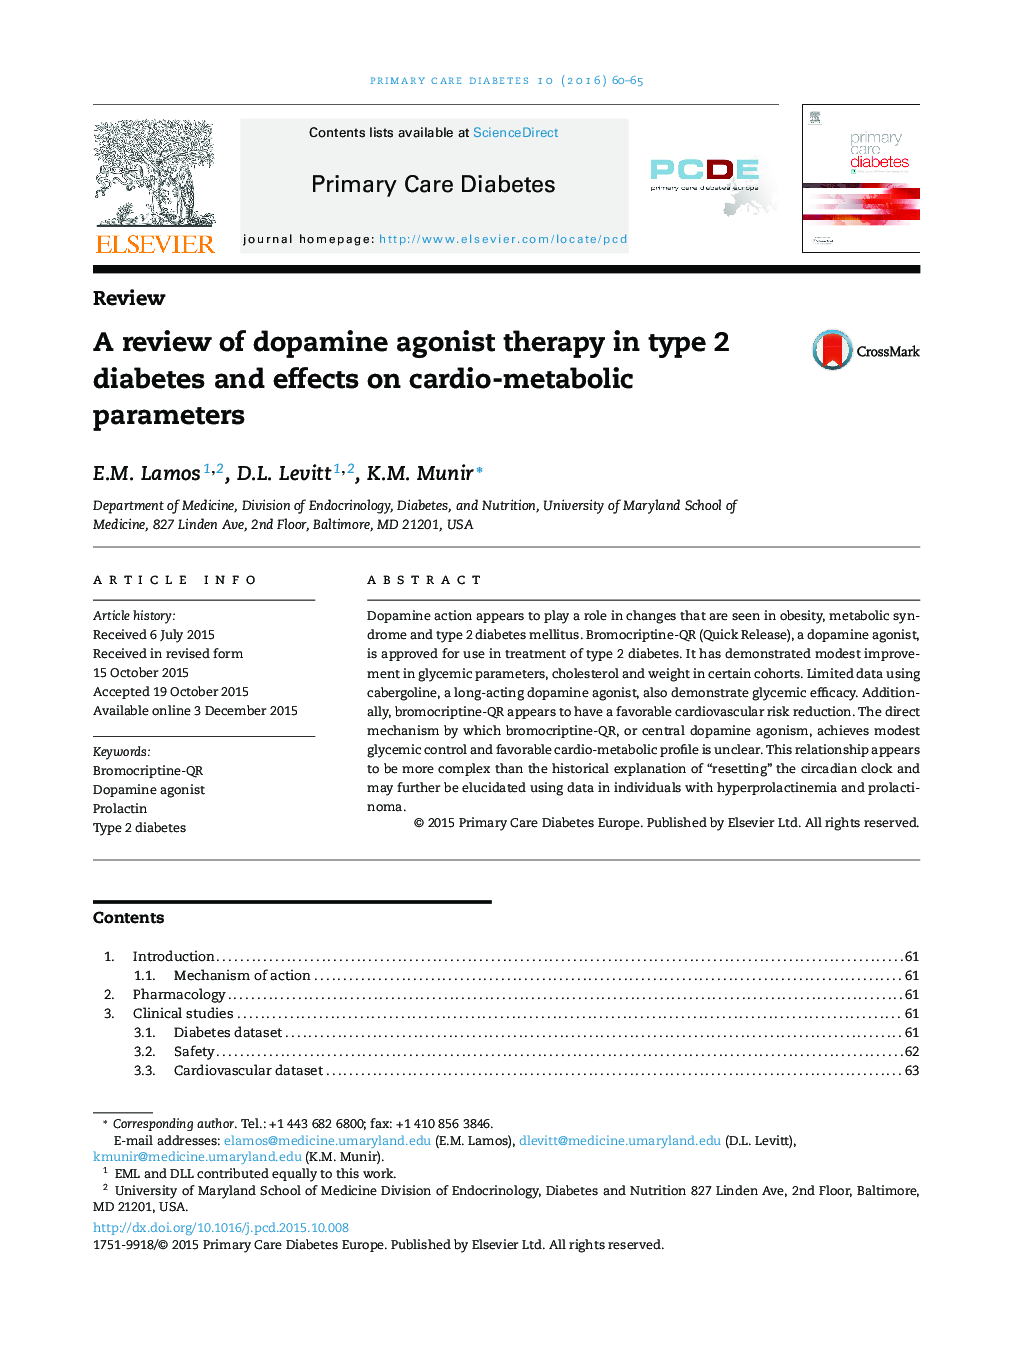 بررسی تجدید نظر در درمان آگونیست دوپامین در دیابت نوع 2 و اثرات آن بر پارامترهای متابولیک قلبی 